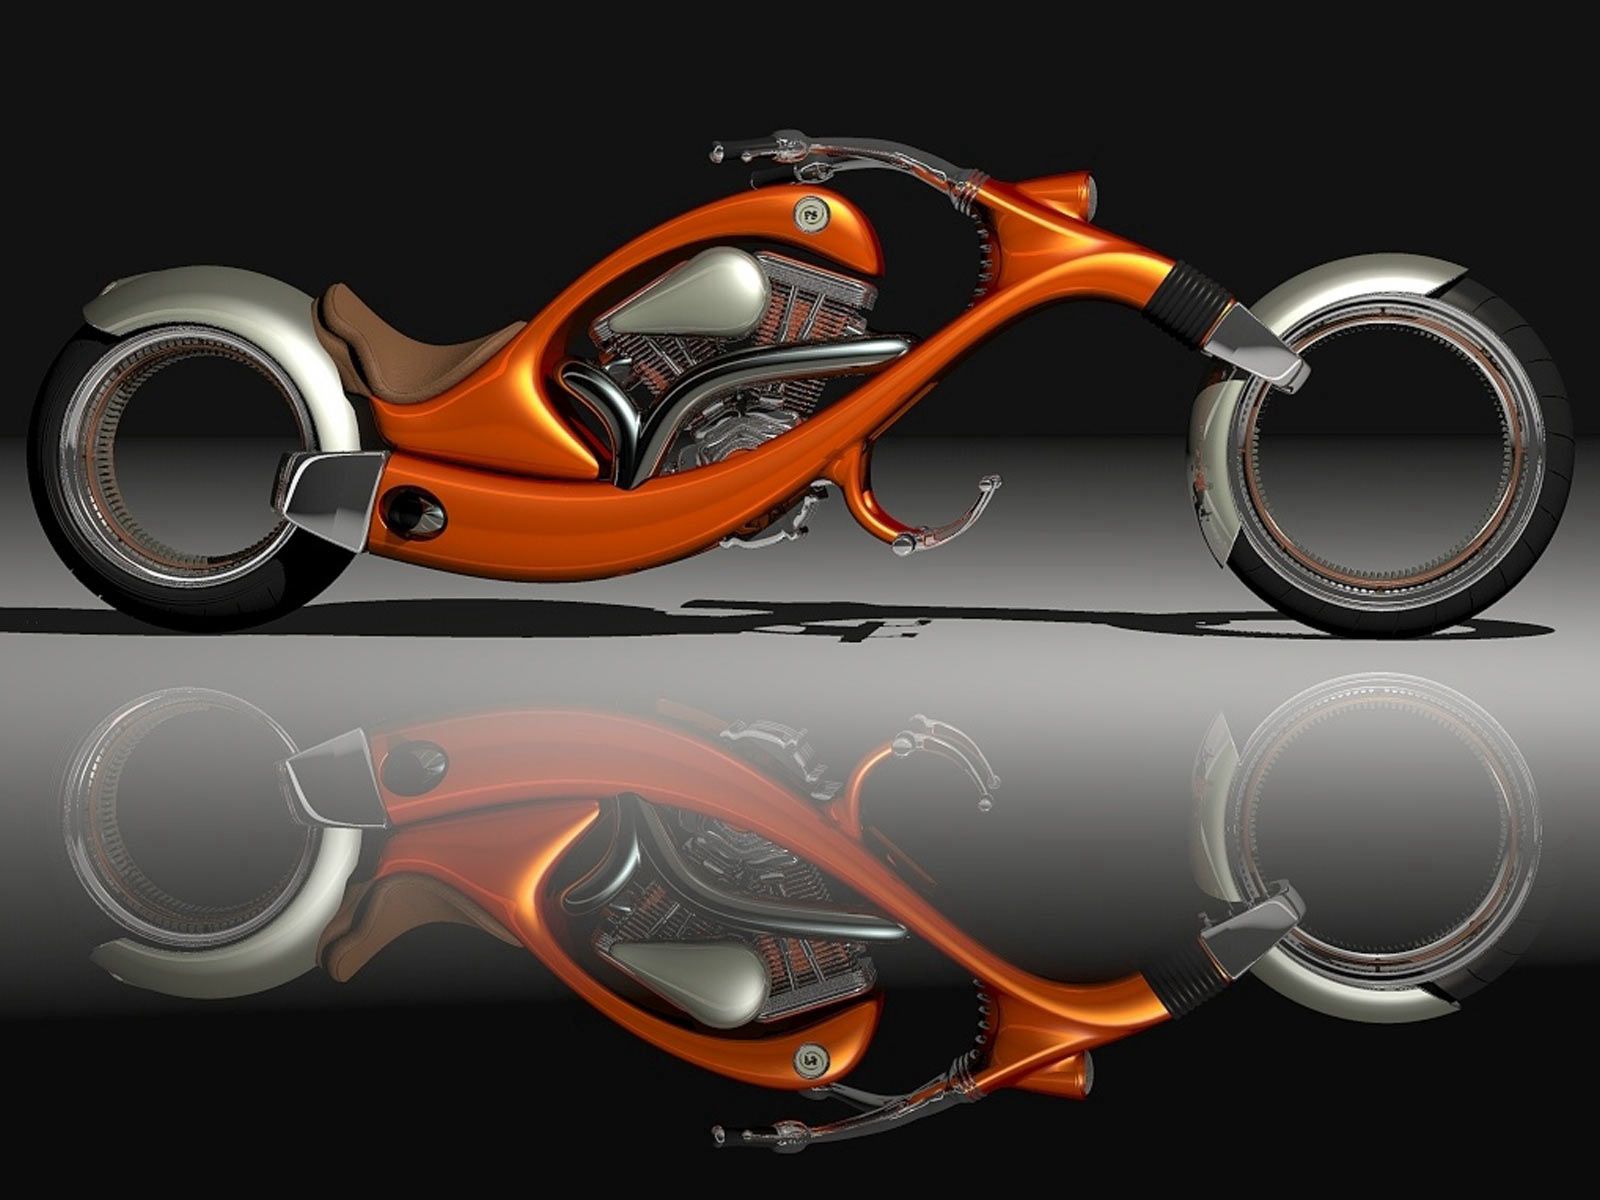 motorcycles, orange, motorcycle, stylish High Definition image